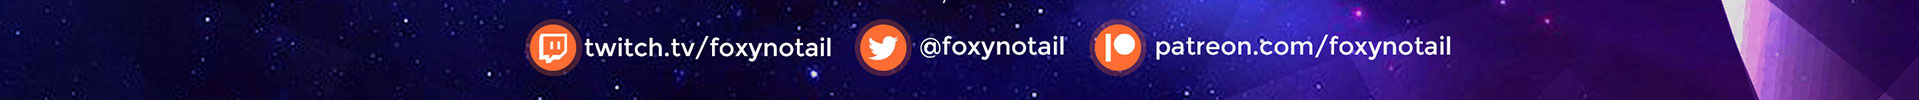 foxynotail header image